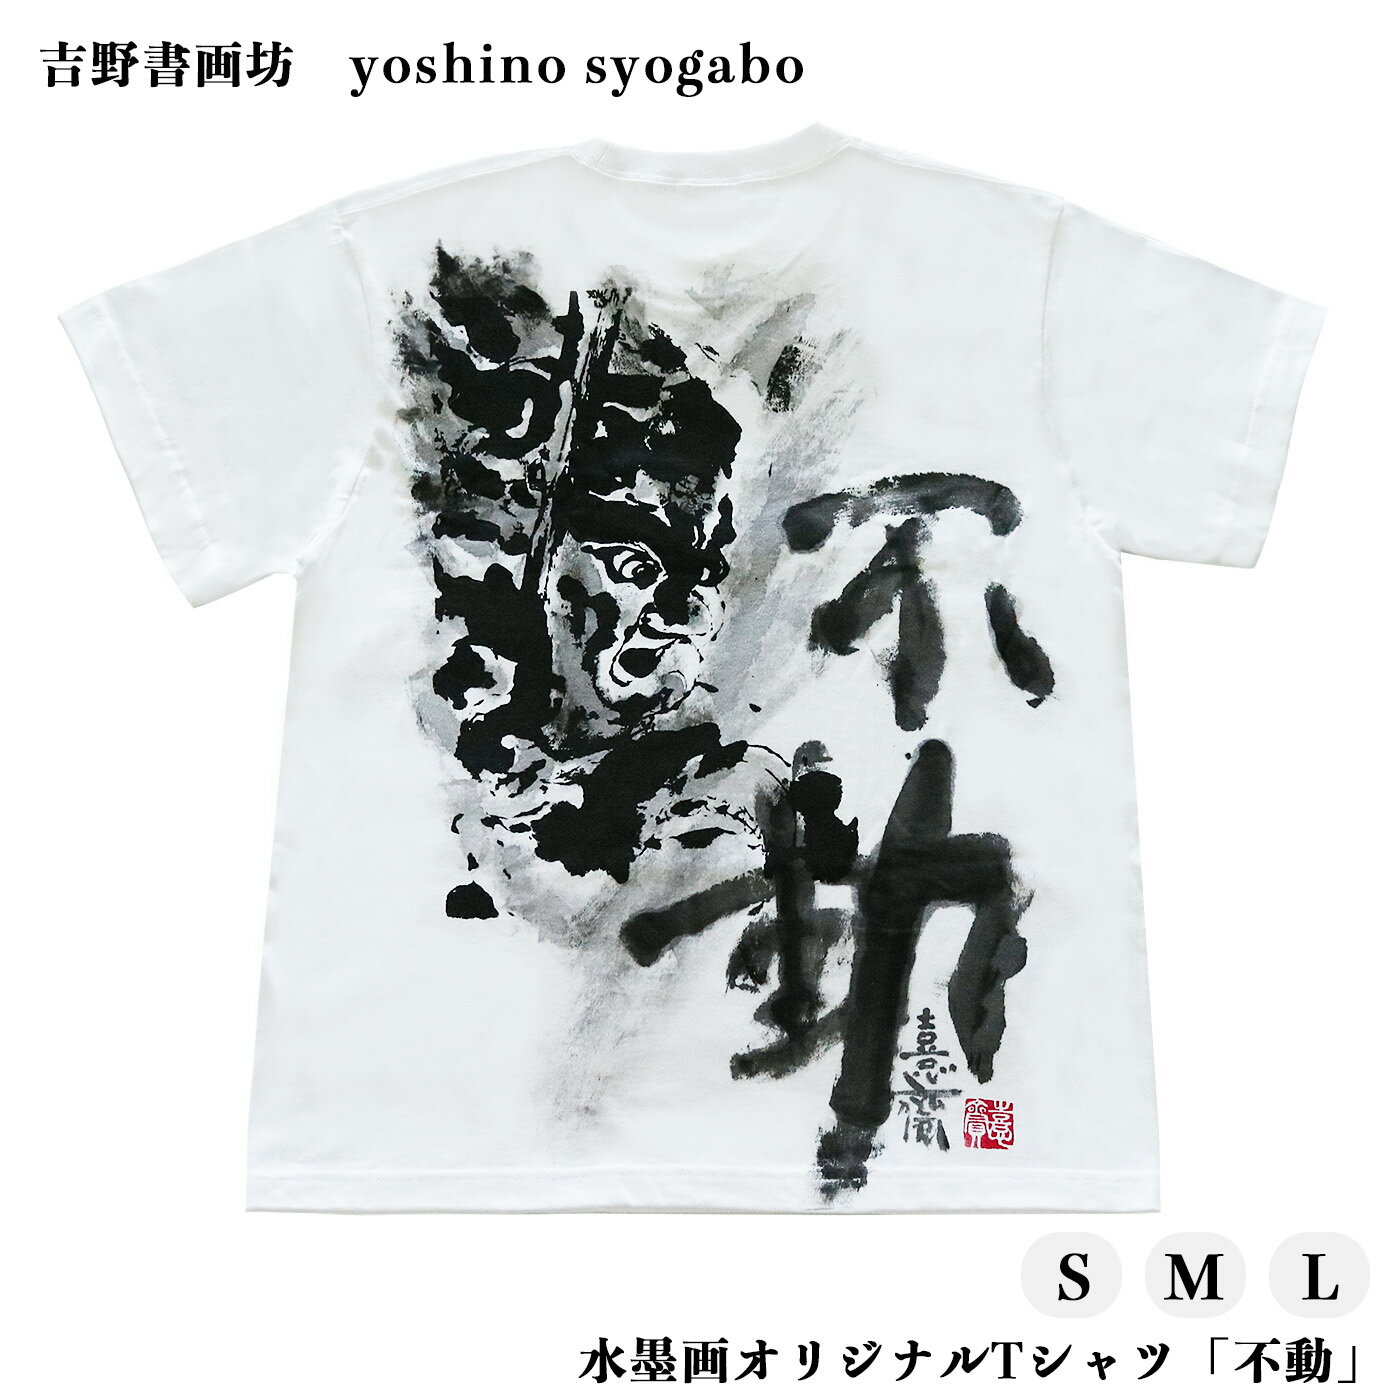 水墨画 オリジナル Tシャツ 「 不動 」 奈良県 吉野町 Lサイズ Mサイズ Sサイズ